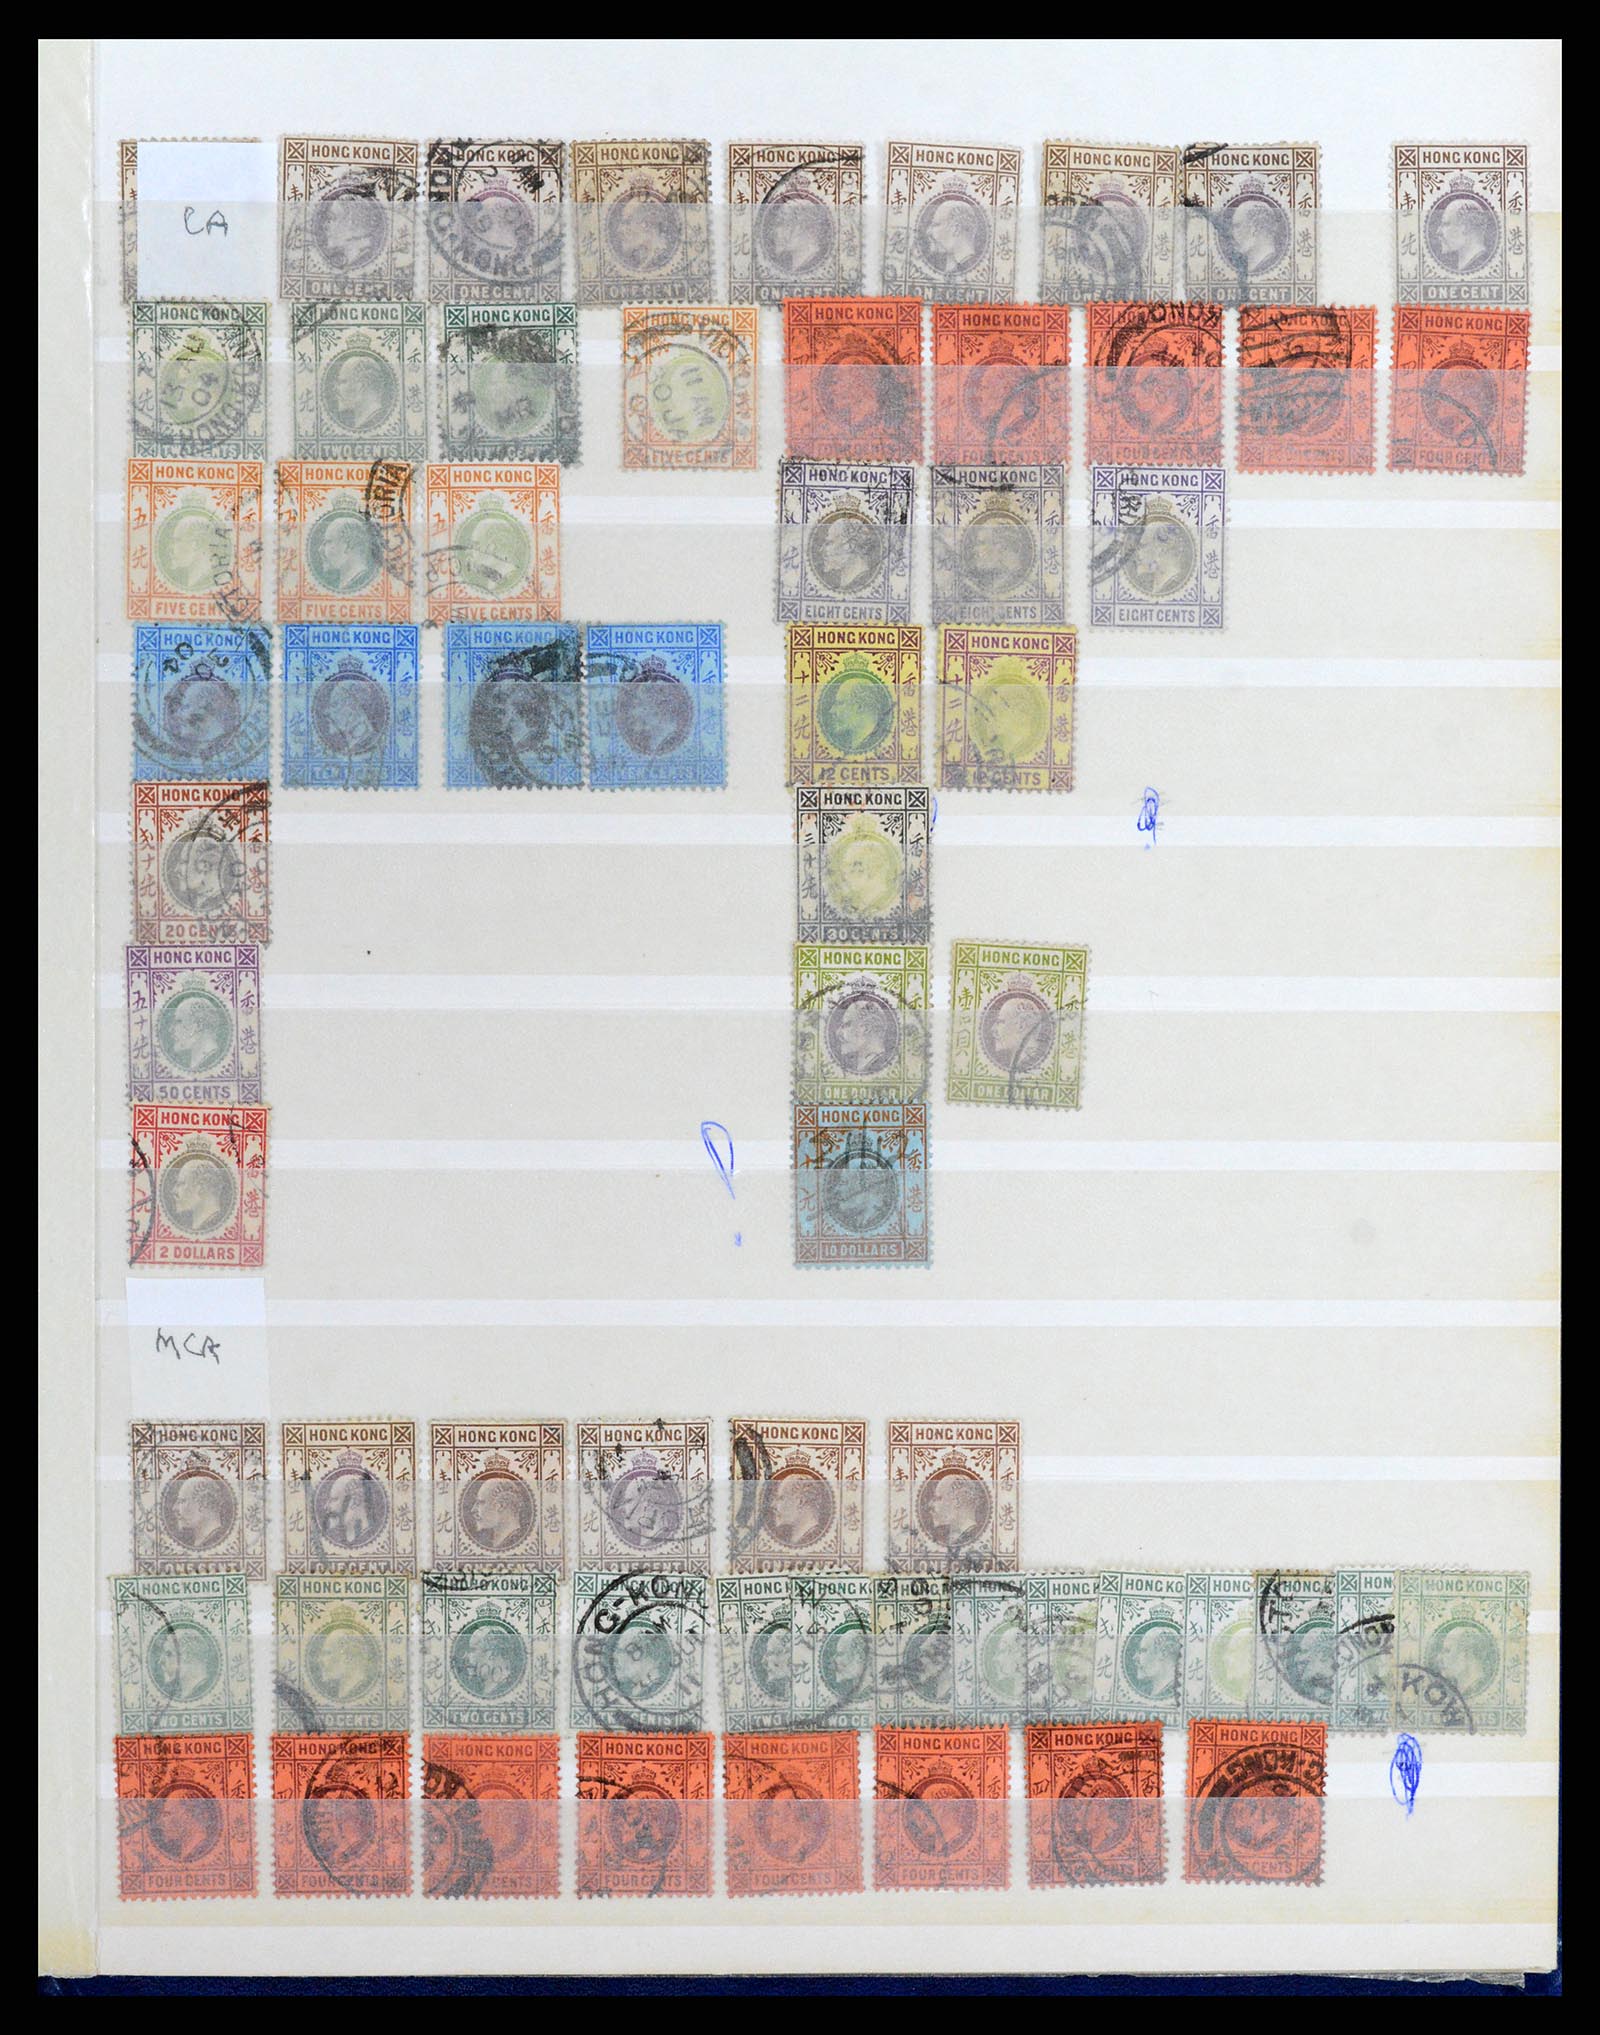 37358 042 - Stamp collection 37358 Hong Kong 1861-1997.